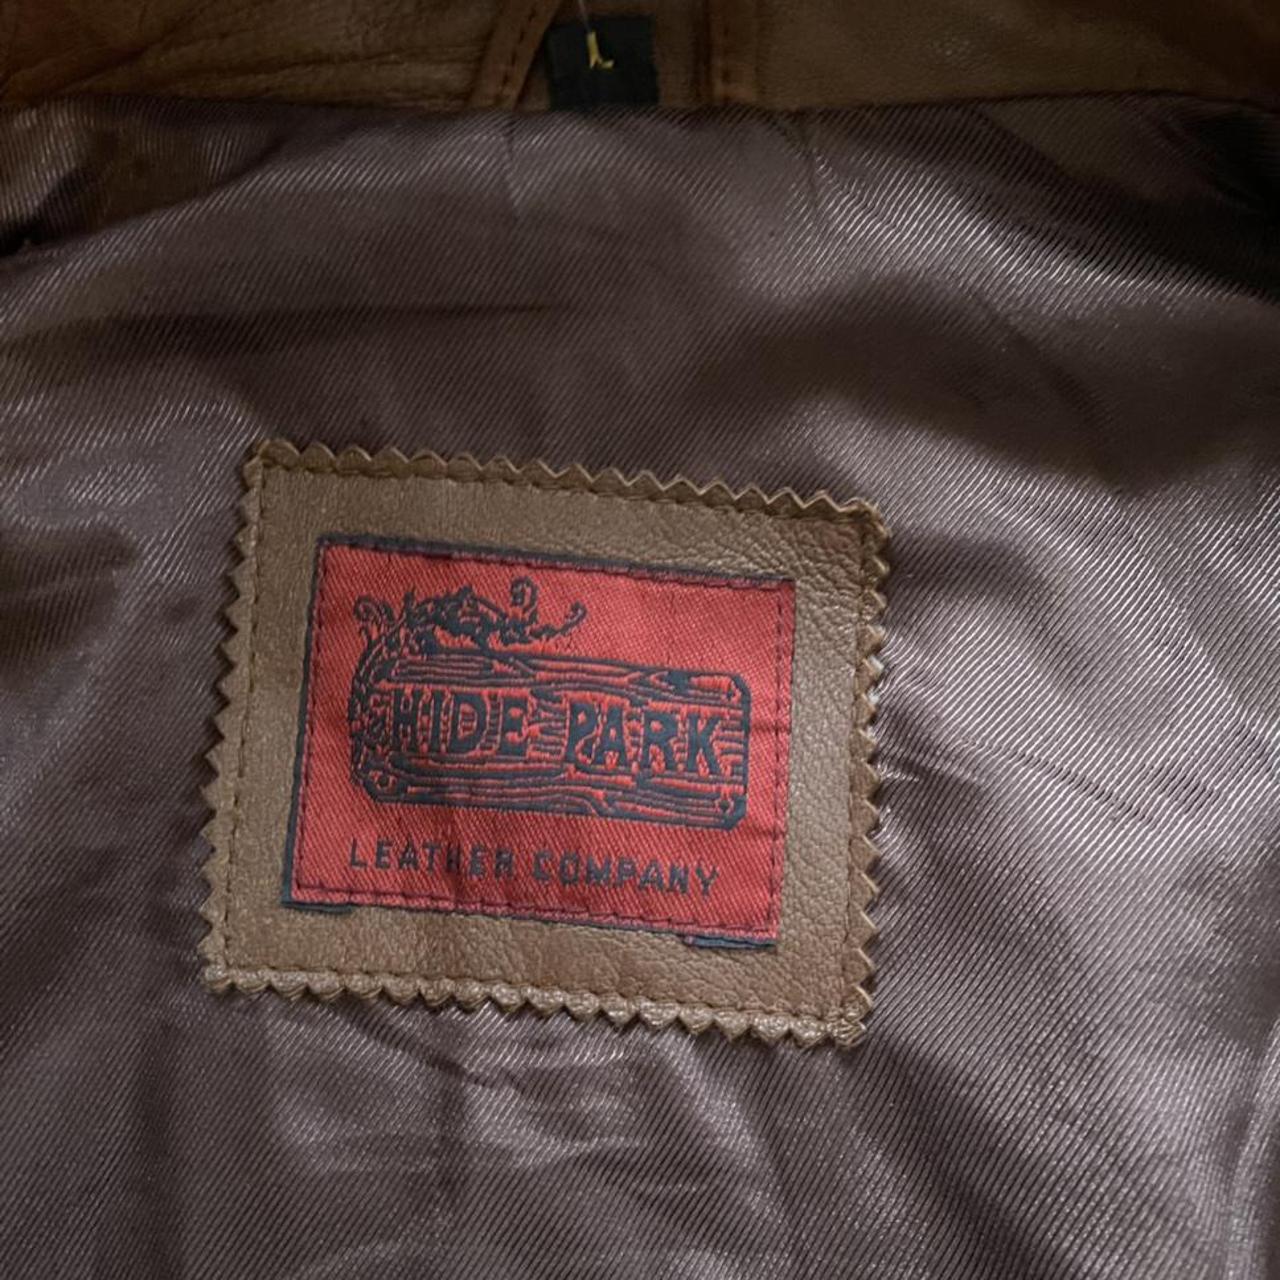 Hide park vintage retro leather jacket. Super soft... - Depop